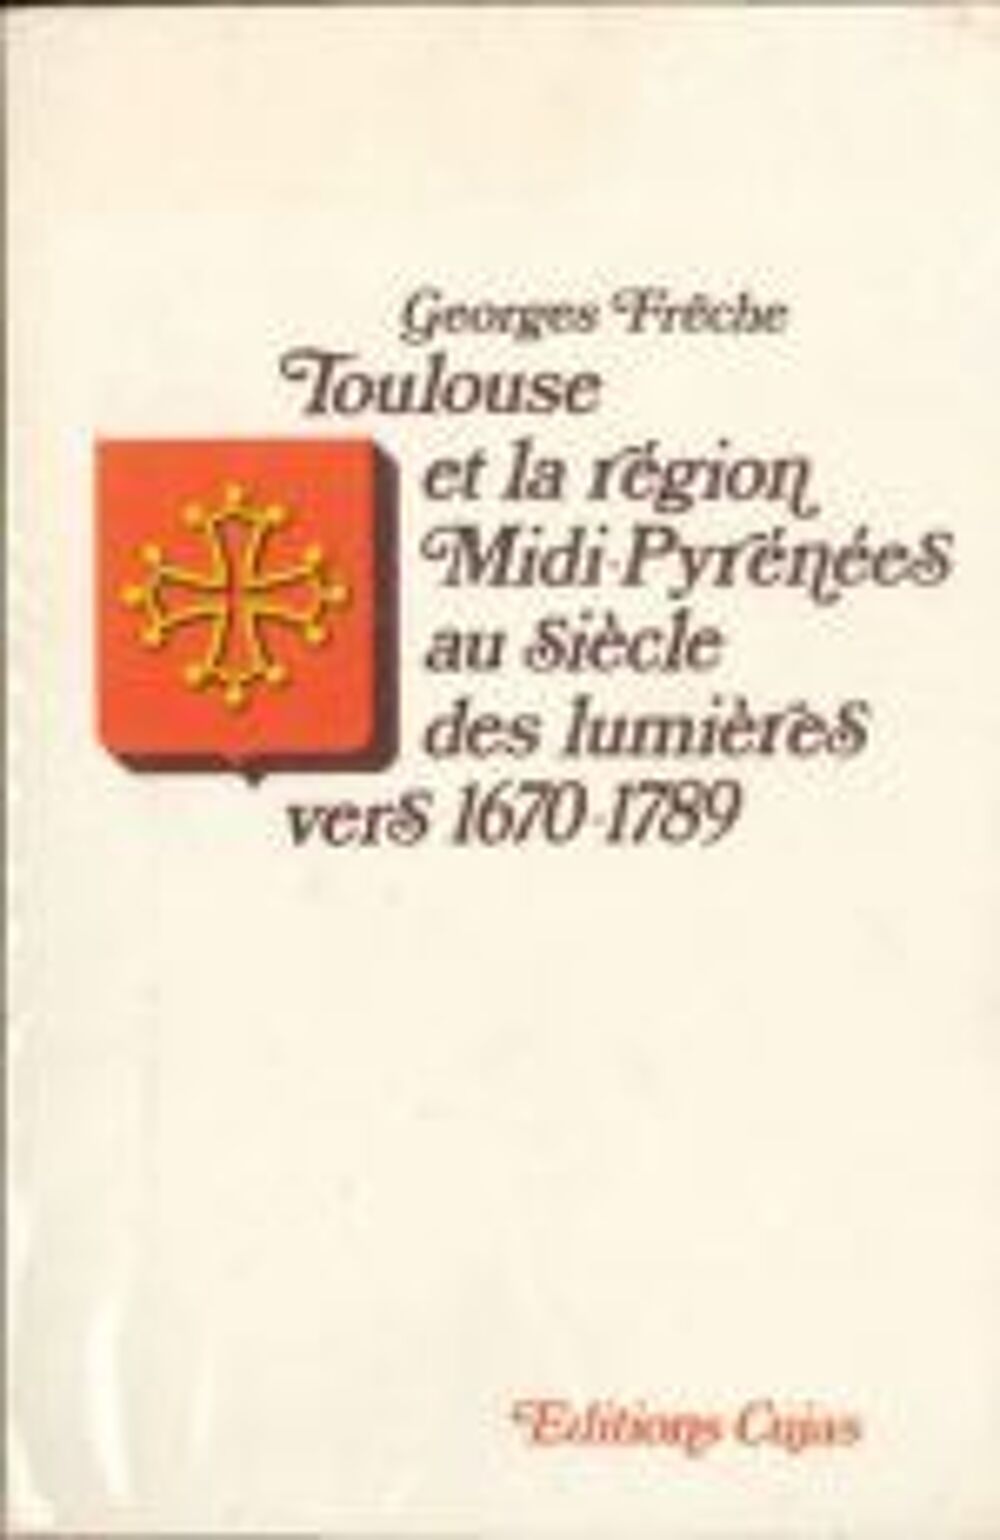 Georges Fr&ecirc;che &quot;Toulouse et la r&eacute;gion Midi-Pyr&eacute;n&eacute;es&quot;
Livres et BD